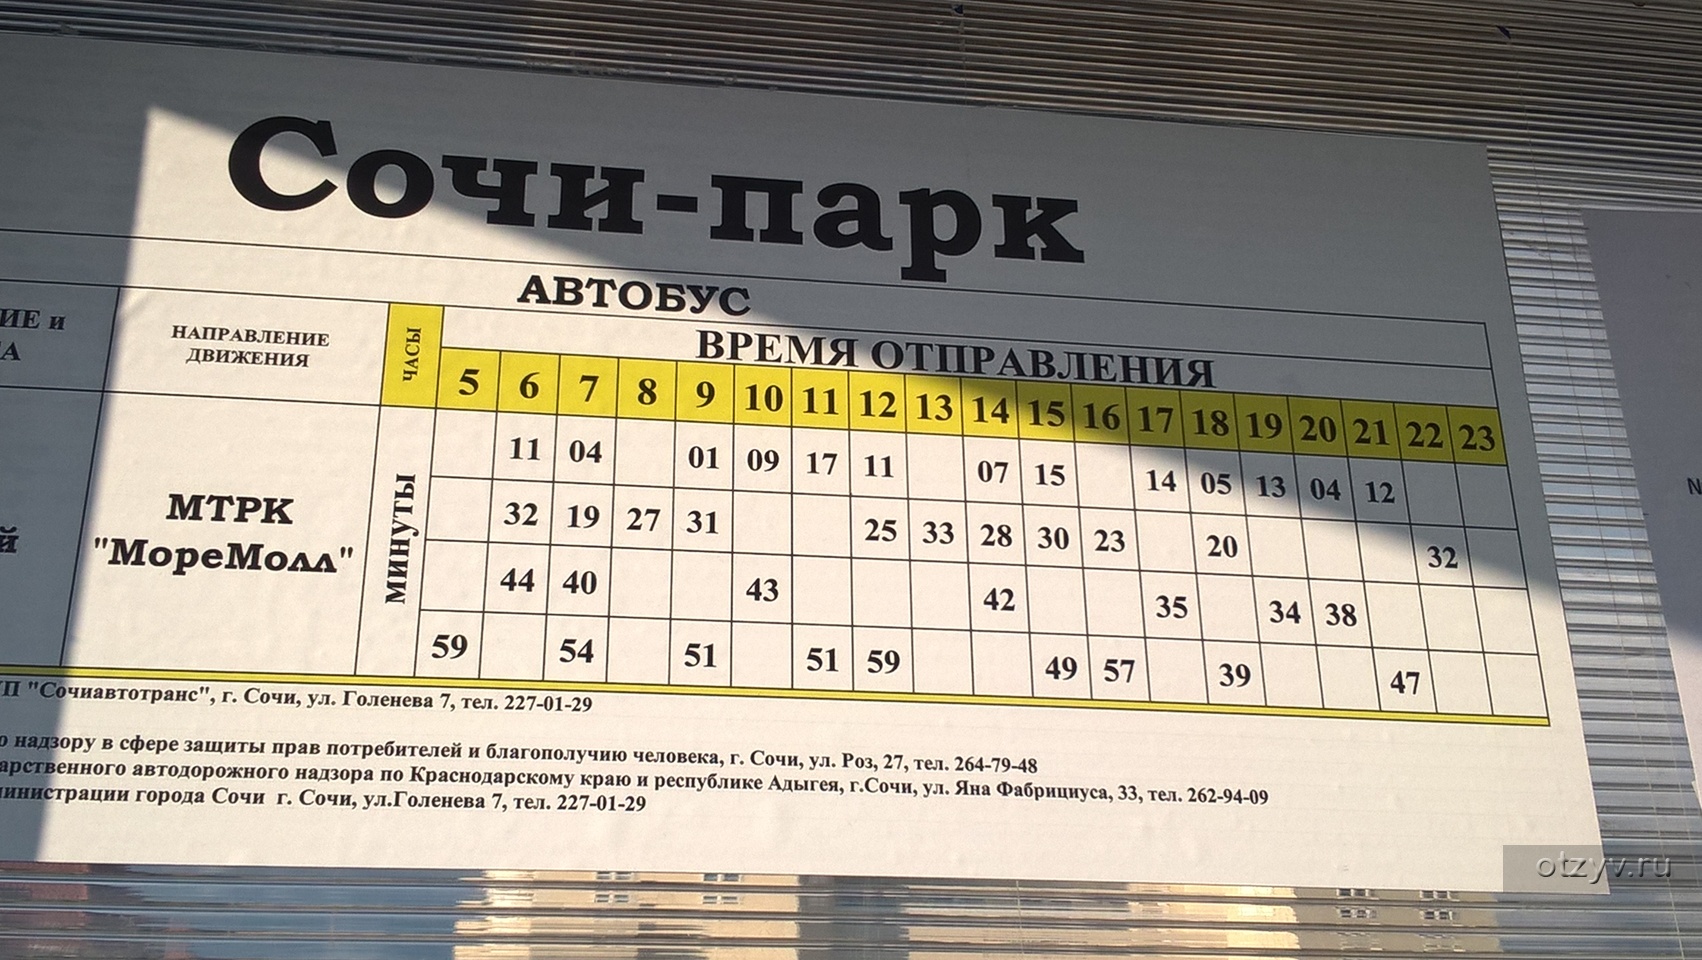 Олимпийский парк автобусы расписание